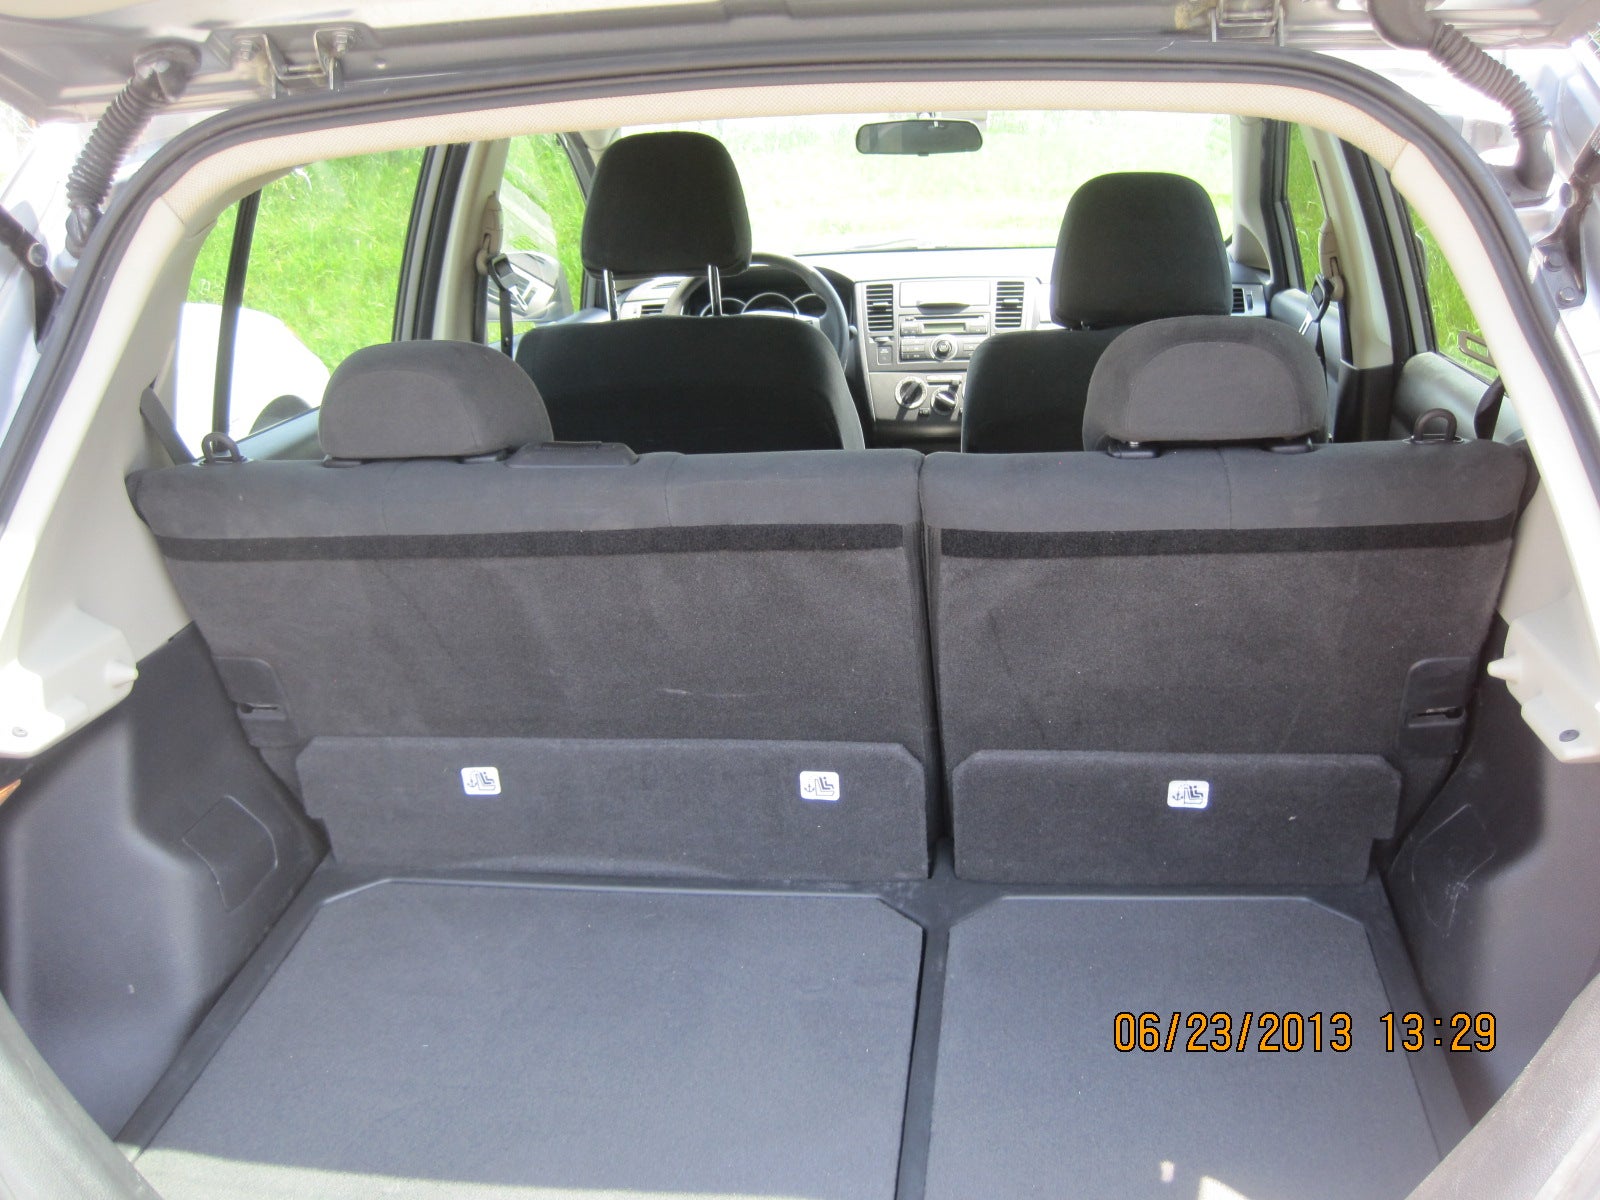 Nissan versa hatchback interior pictures